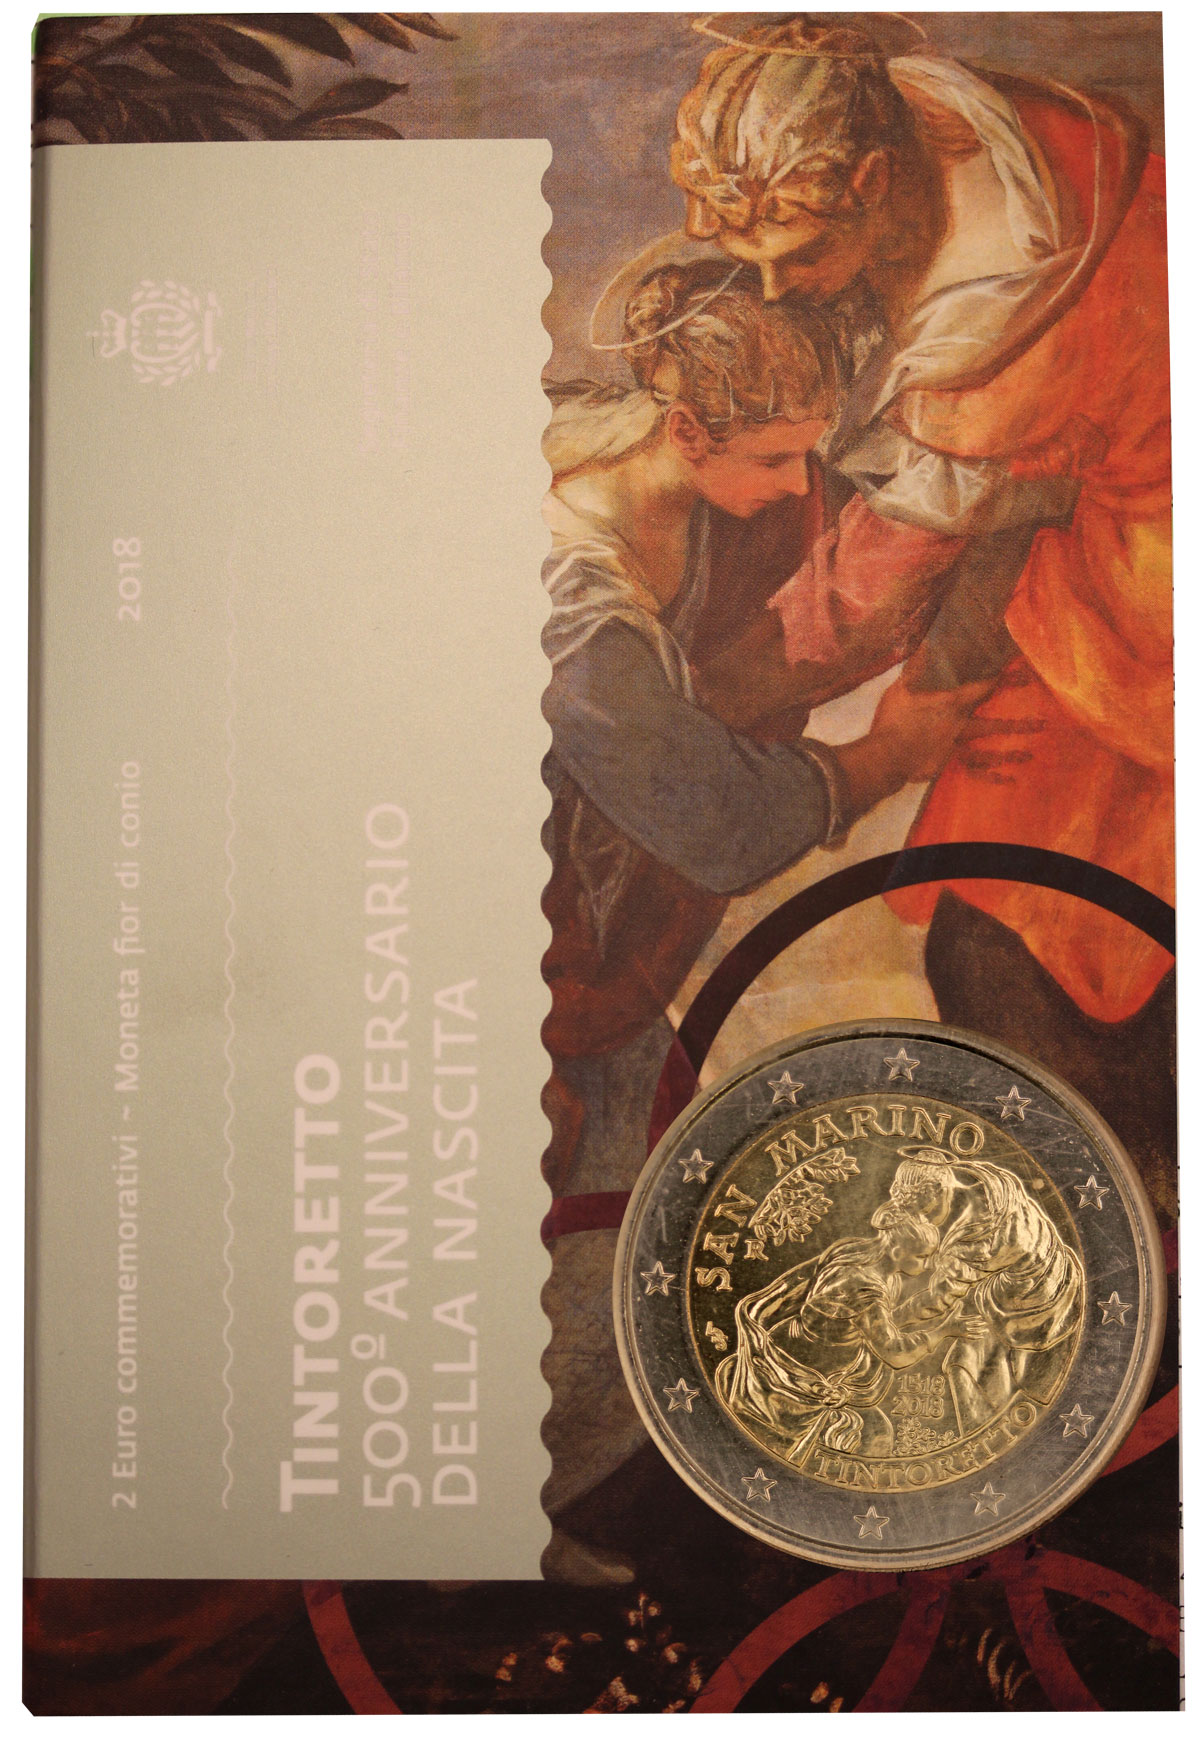 500 Anniversario della nascita del Tintoretto - 2 Euro in confezione ufficiale